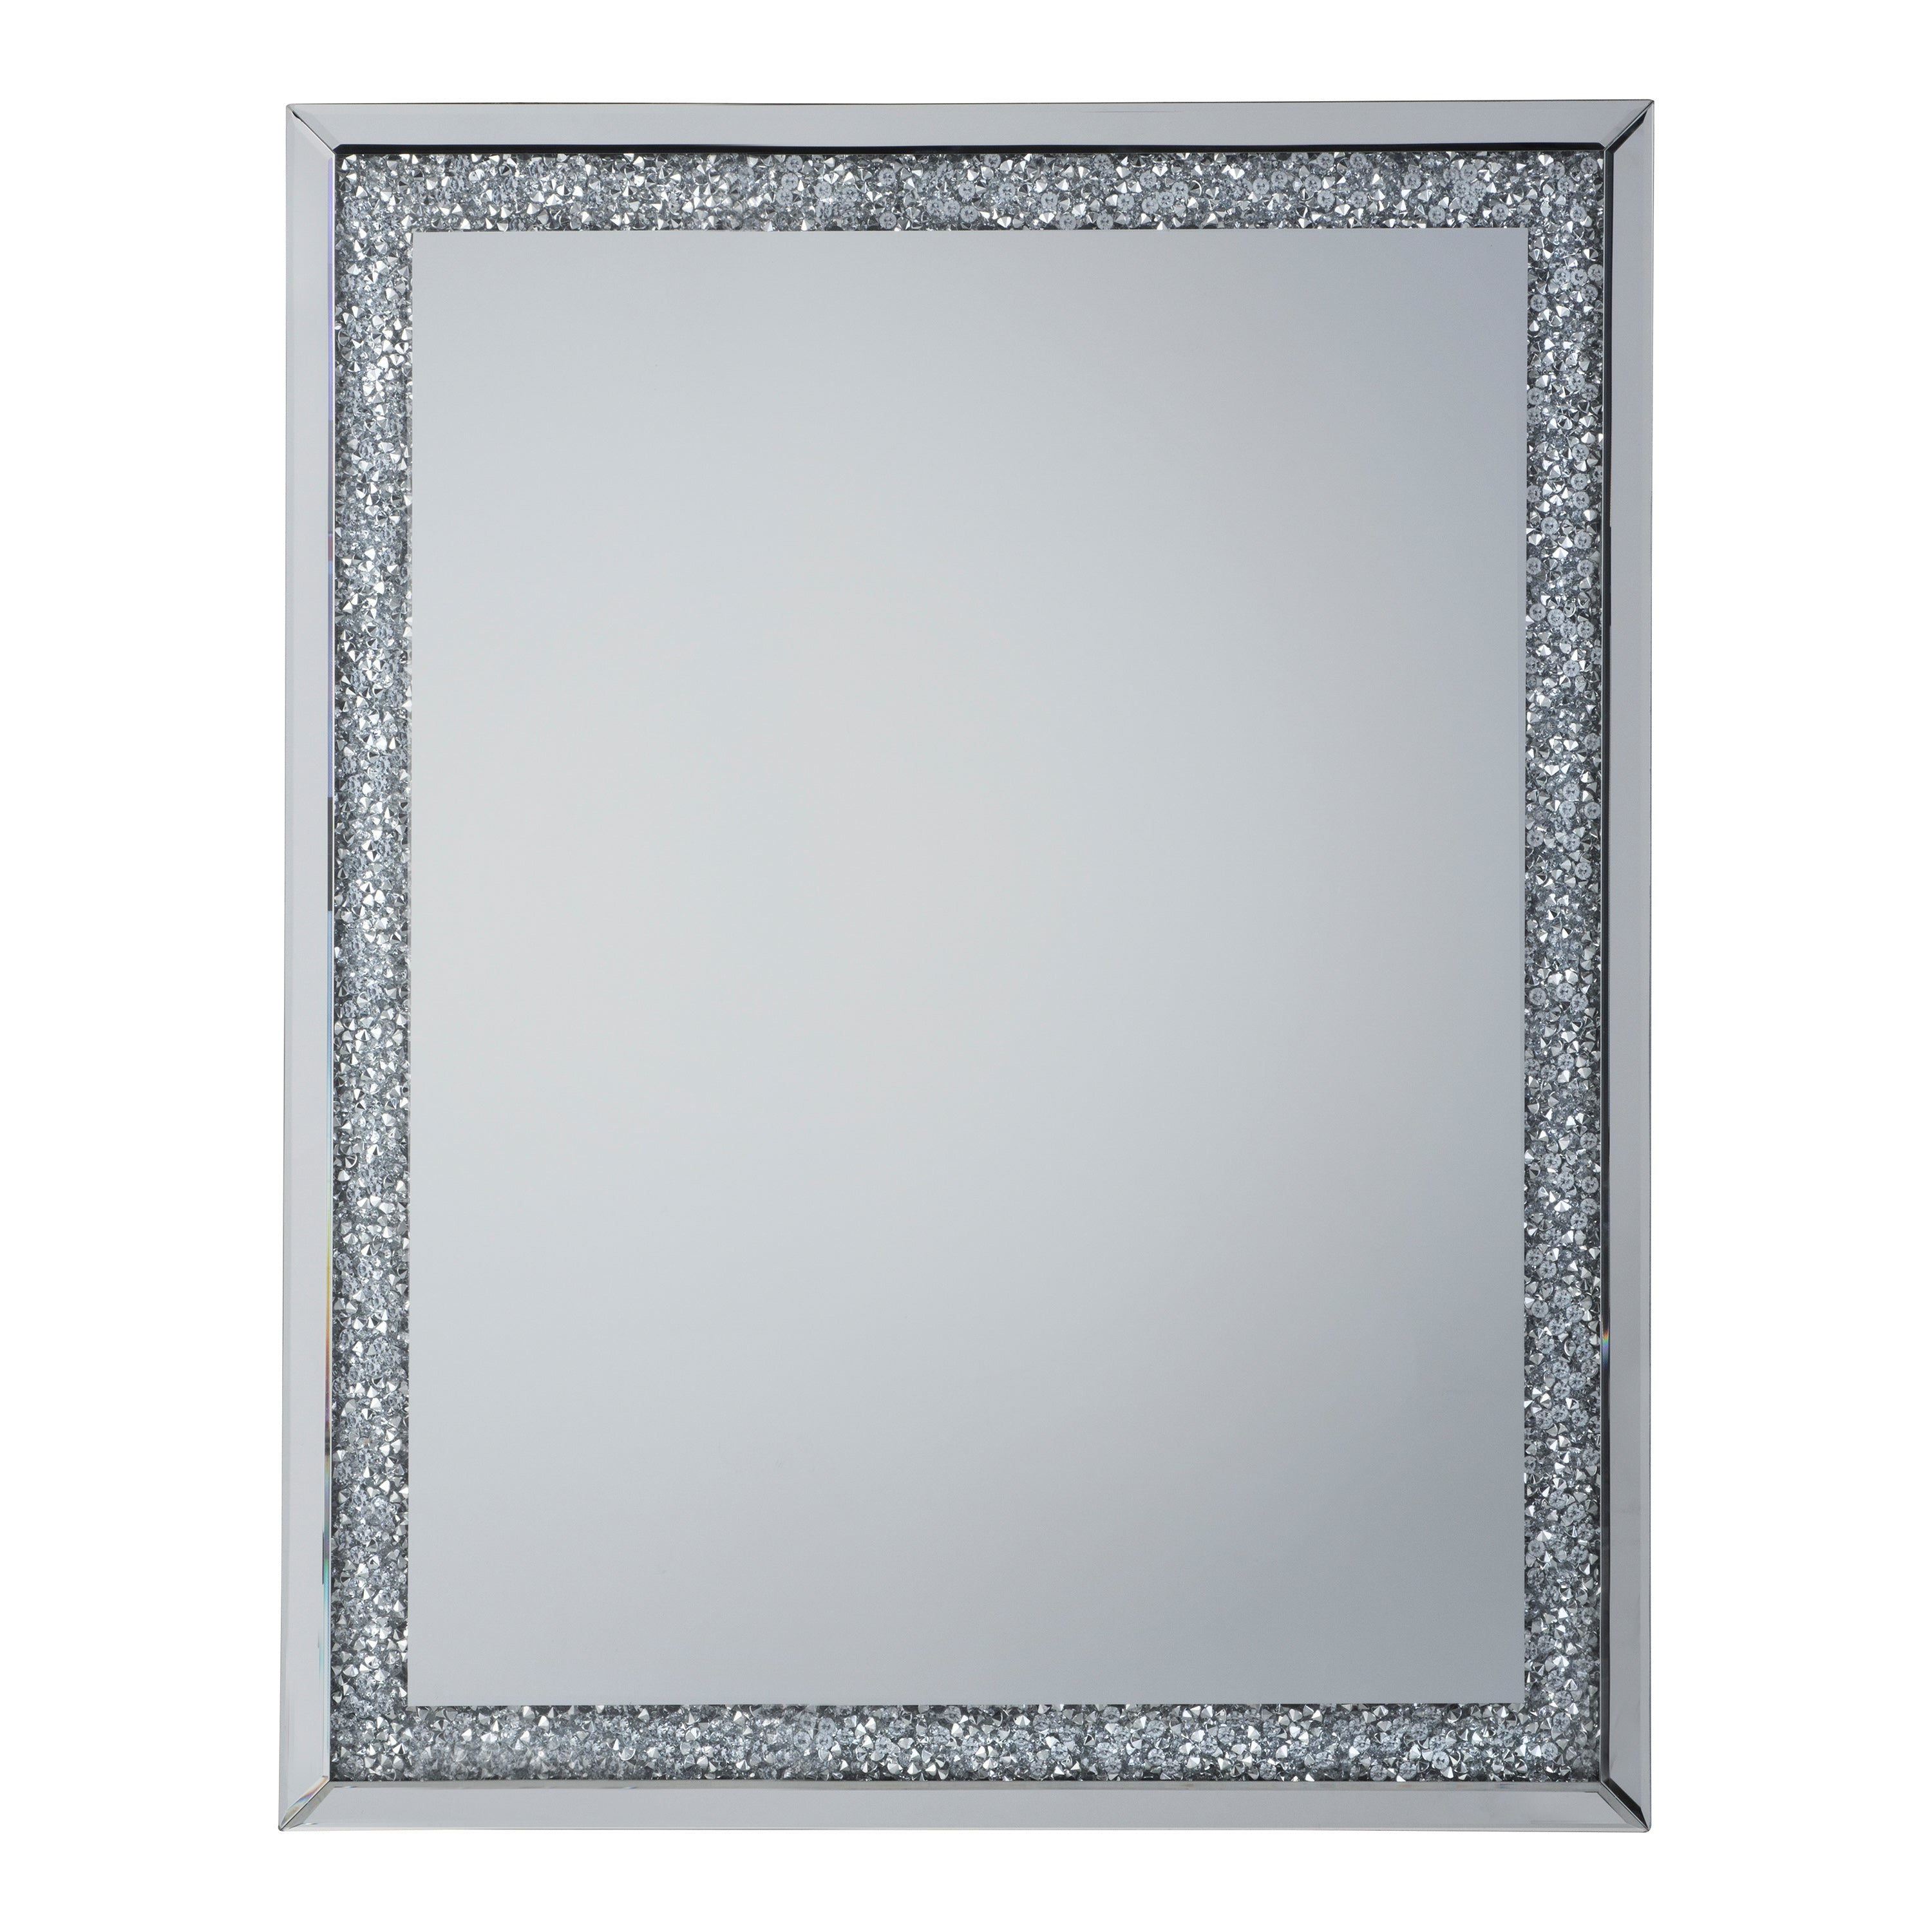 Westmore Silver Mirror 60 x 90 cm